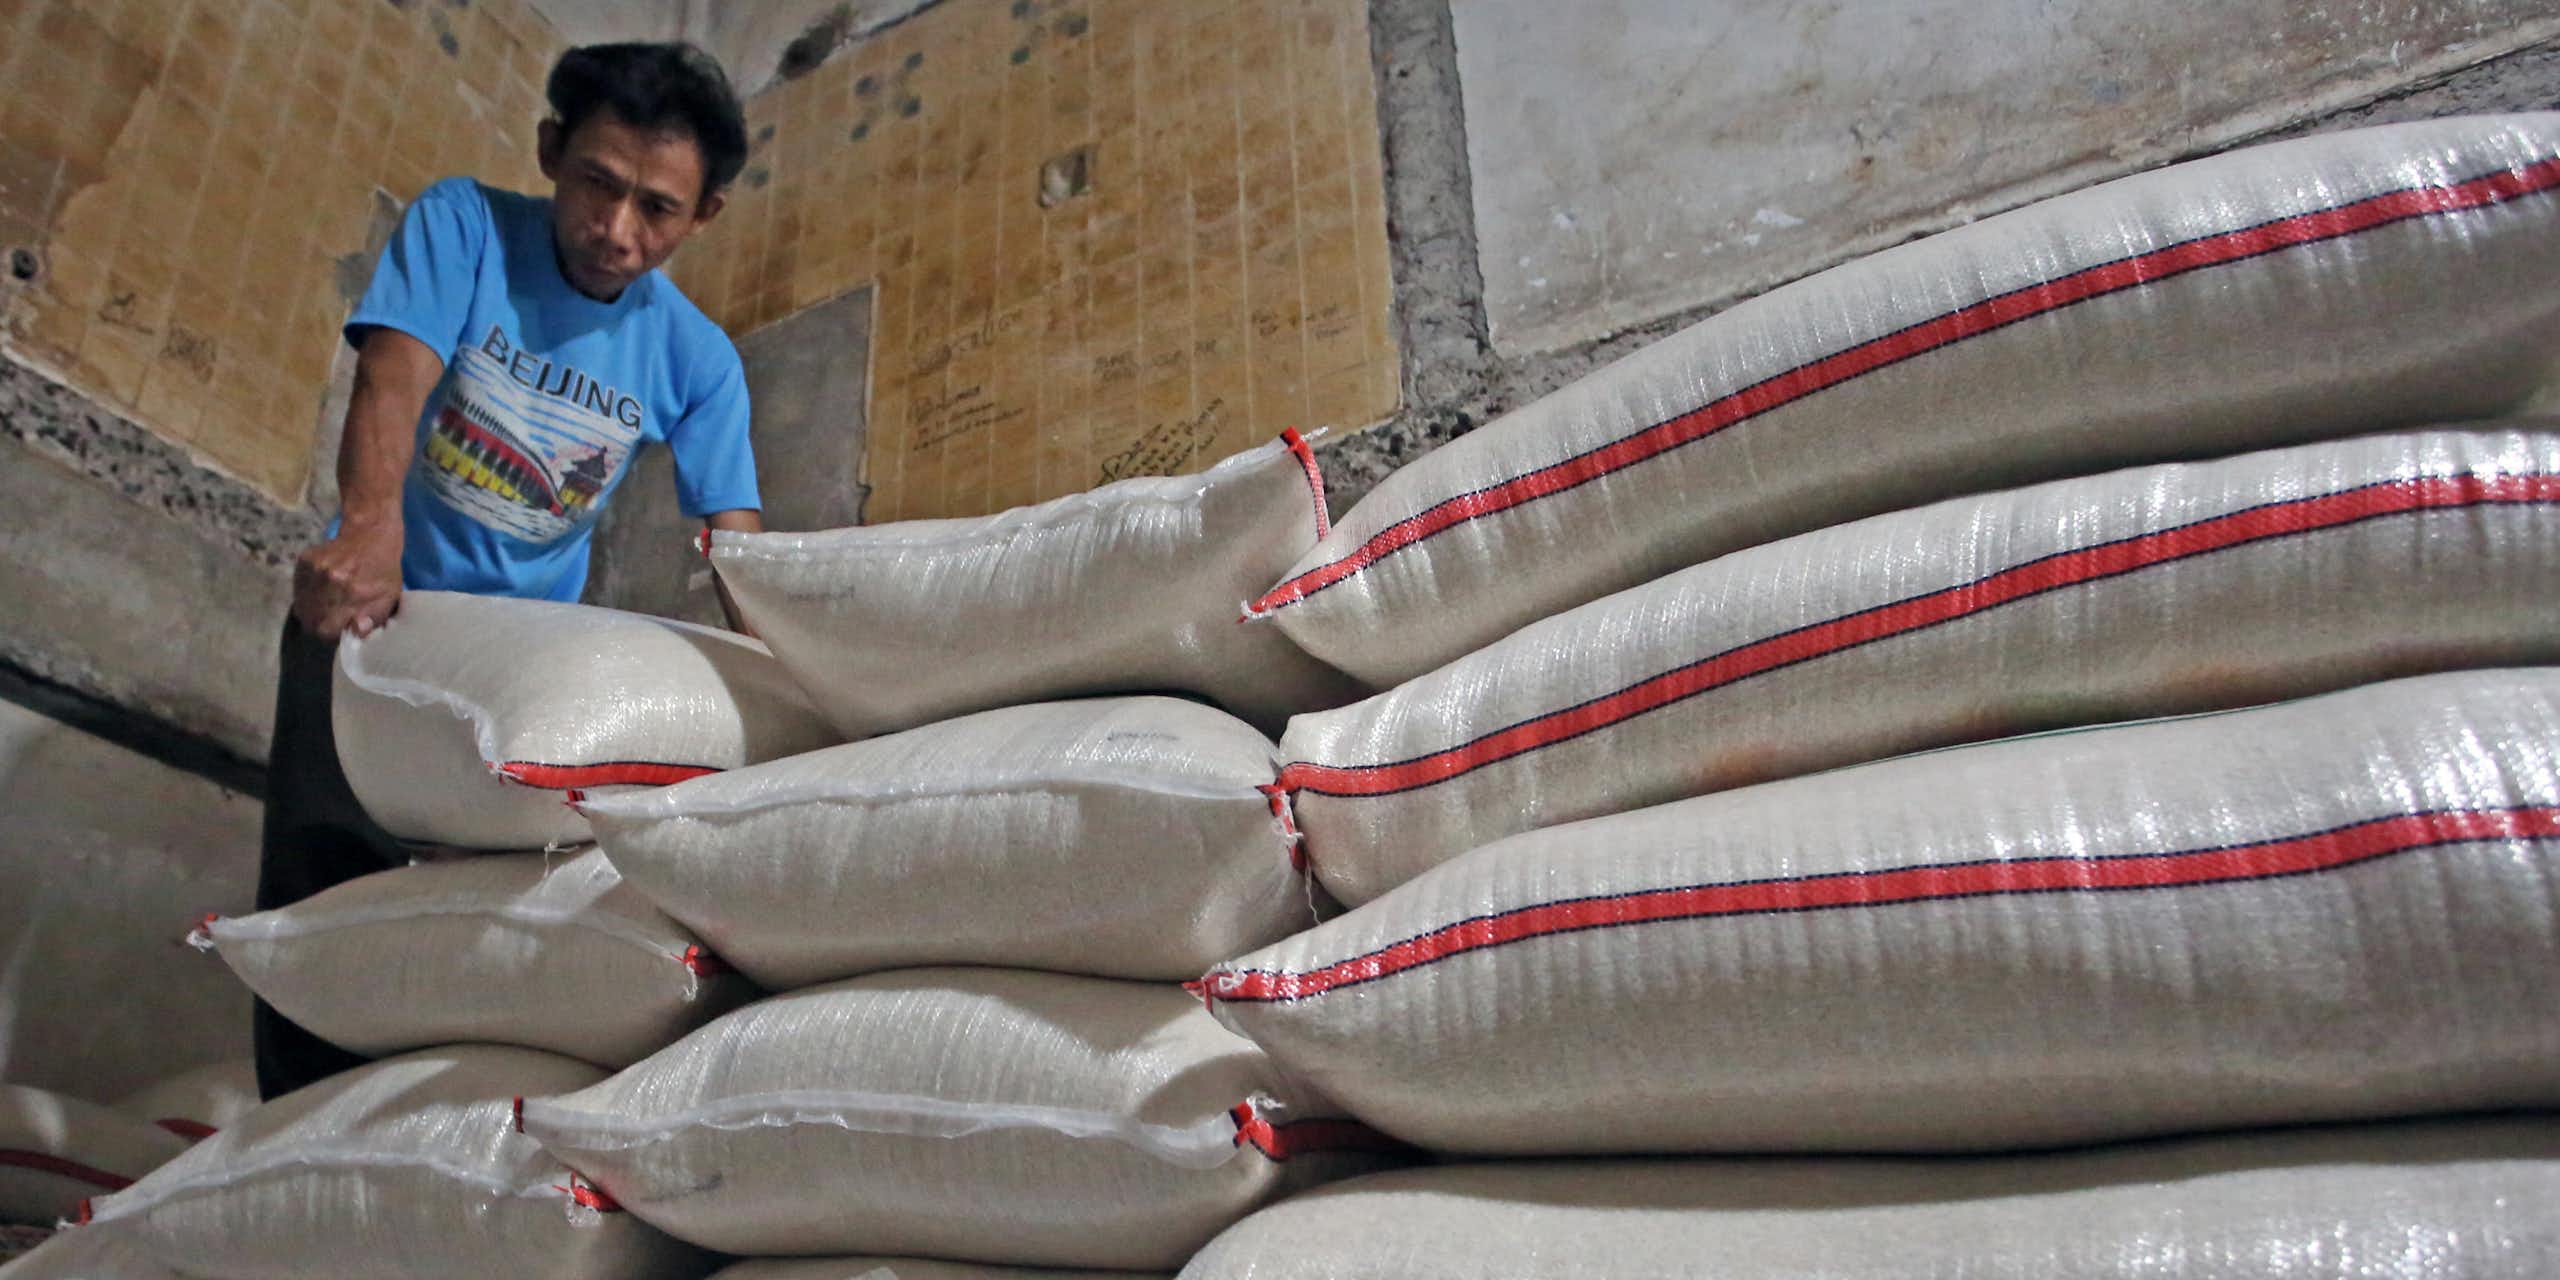 Cek Fakta: Jokowi klaim impor beras tidak sampai 5% dari total kebutuhan nasional. Benarkah?